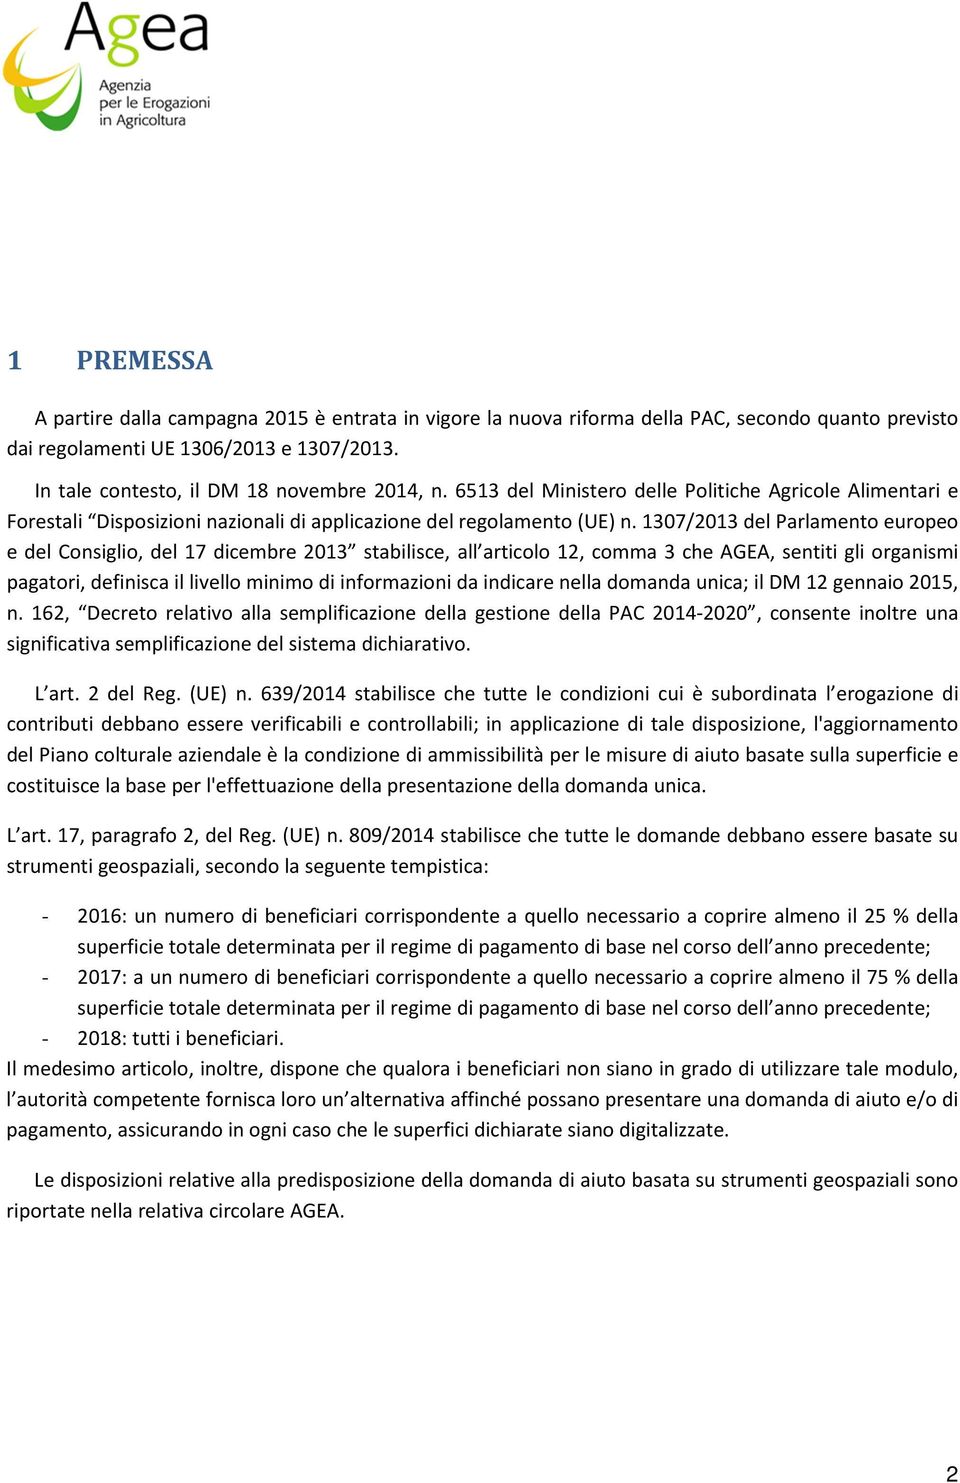 1307/2013 del Parlamento europeo e del Consiglio, del 17 dicembre 2013 stabilisce, all articolo 12, comma 3 che AGEA, sentiti gli organismi pagatori, definisca il livello minimo di informazioni da